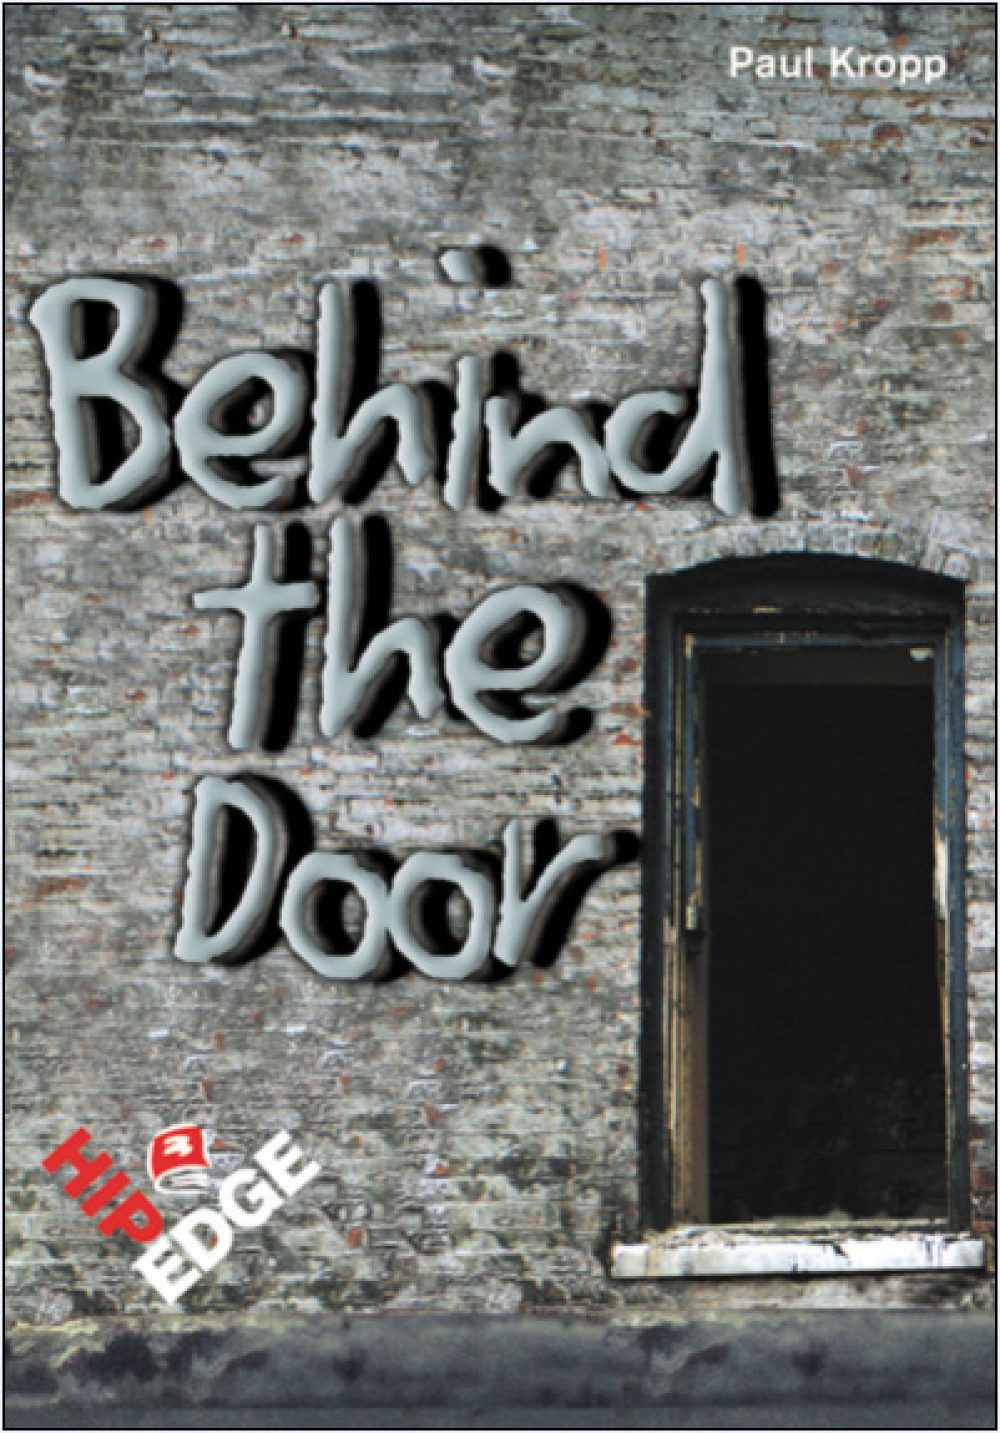 Behind The Door Book Cover